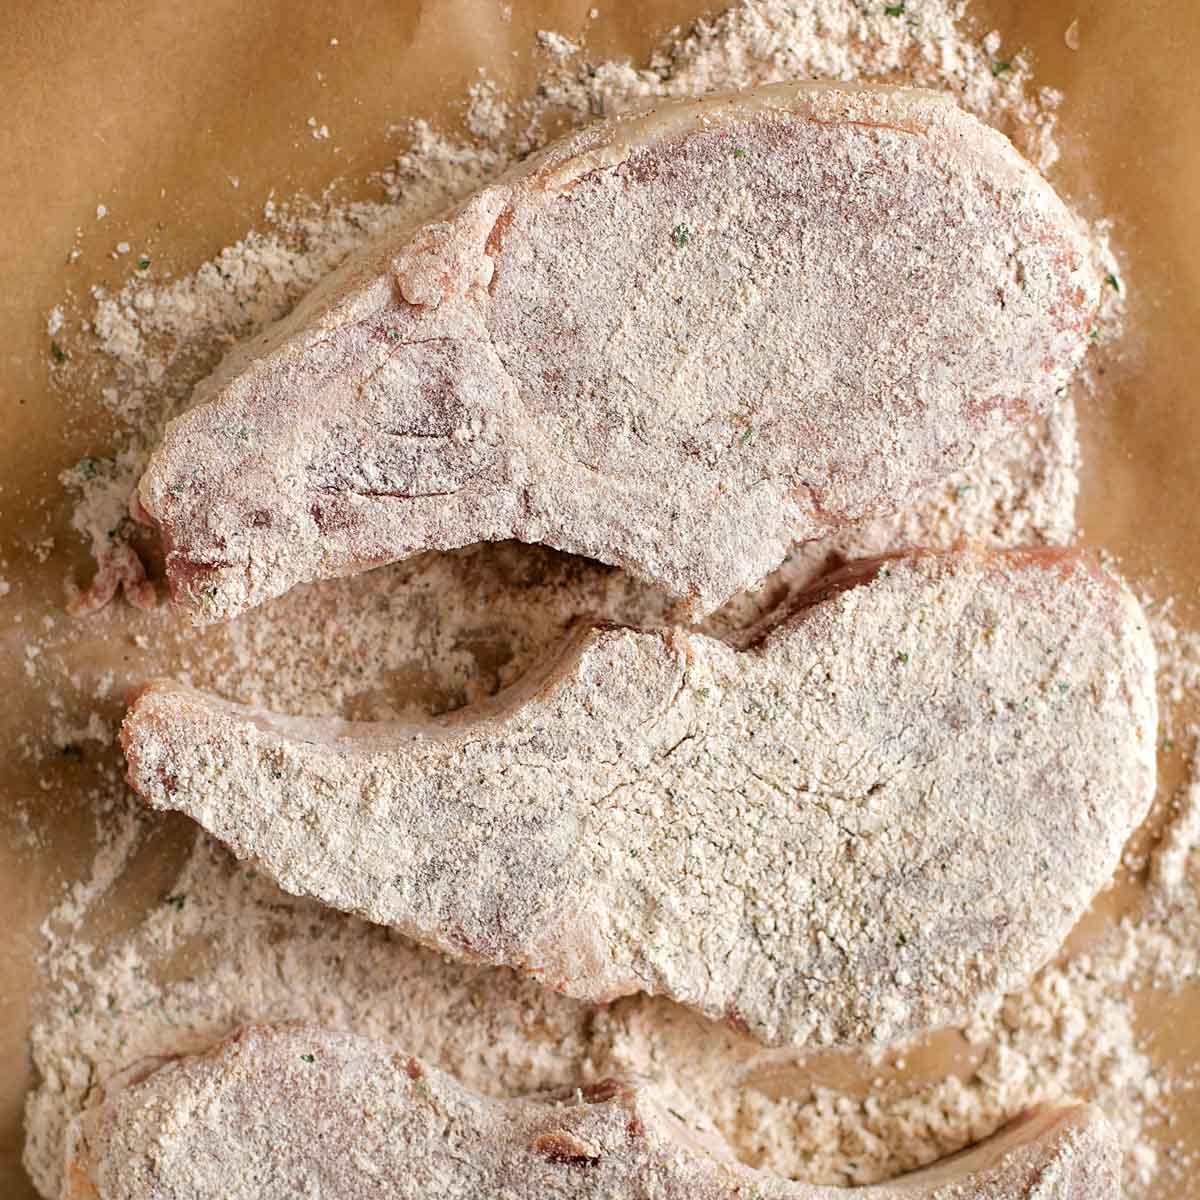 Breading pork chops in seasoned mixture